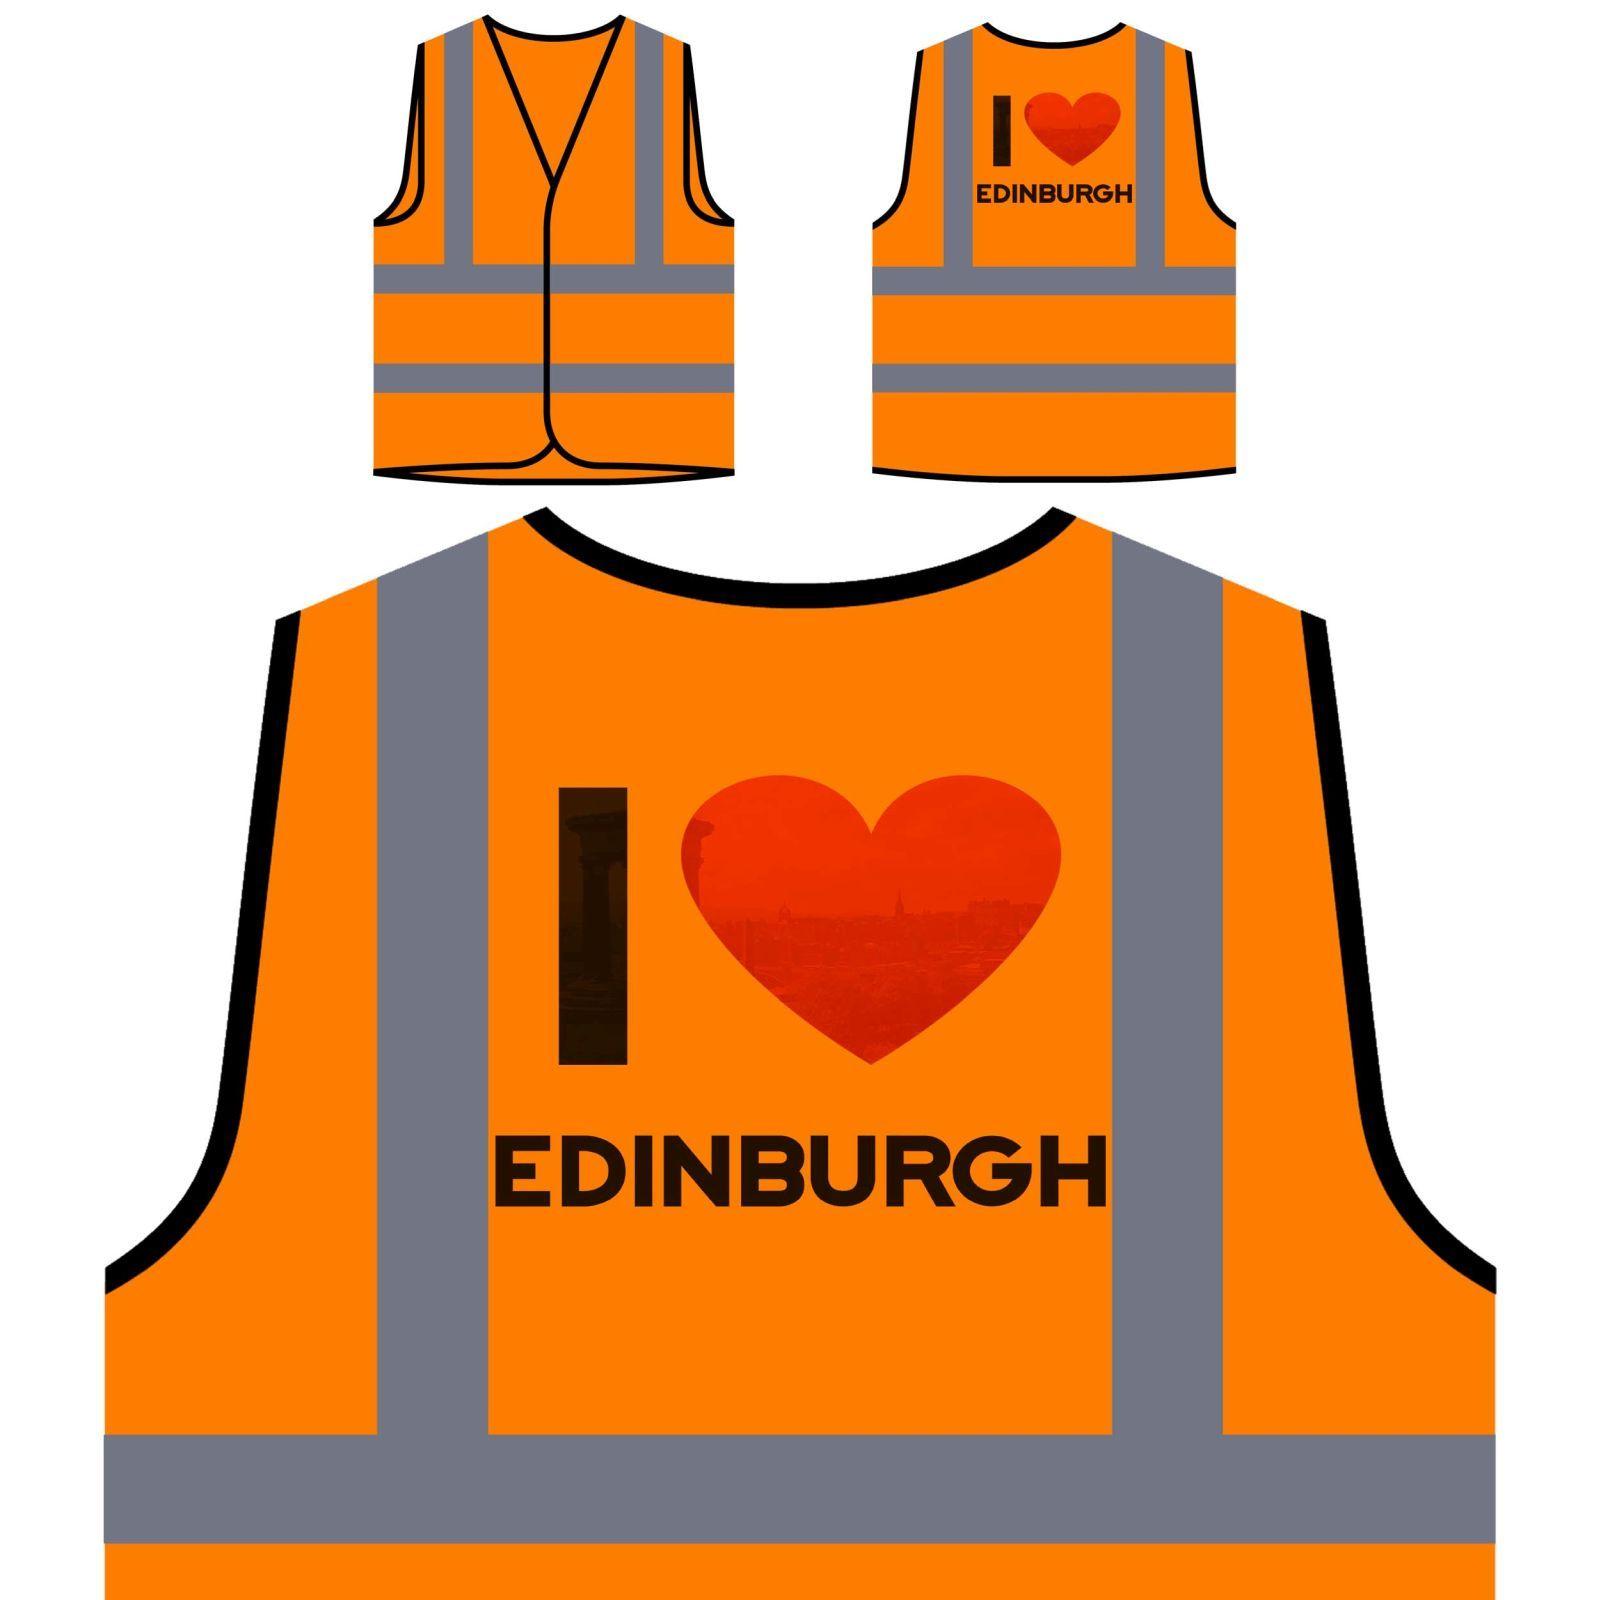 Yellow Orange Logo - i love edinburgh Yellow/Orange Safety Vest cc919v | eBay